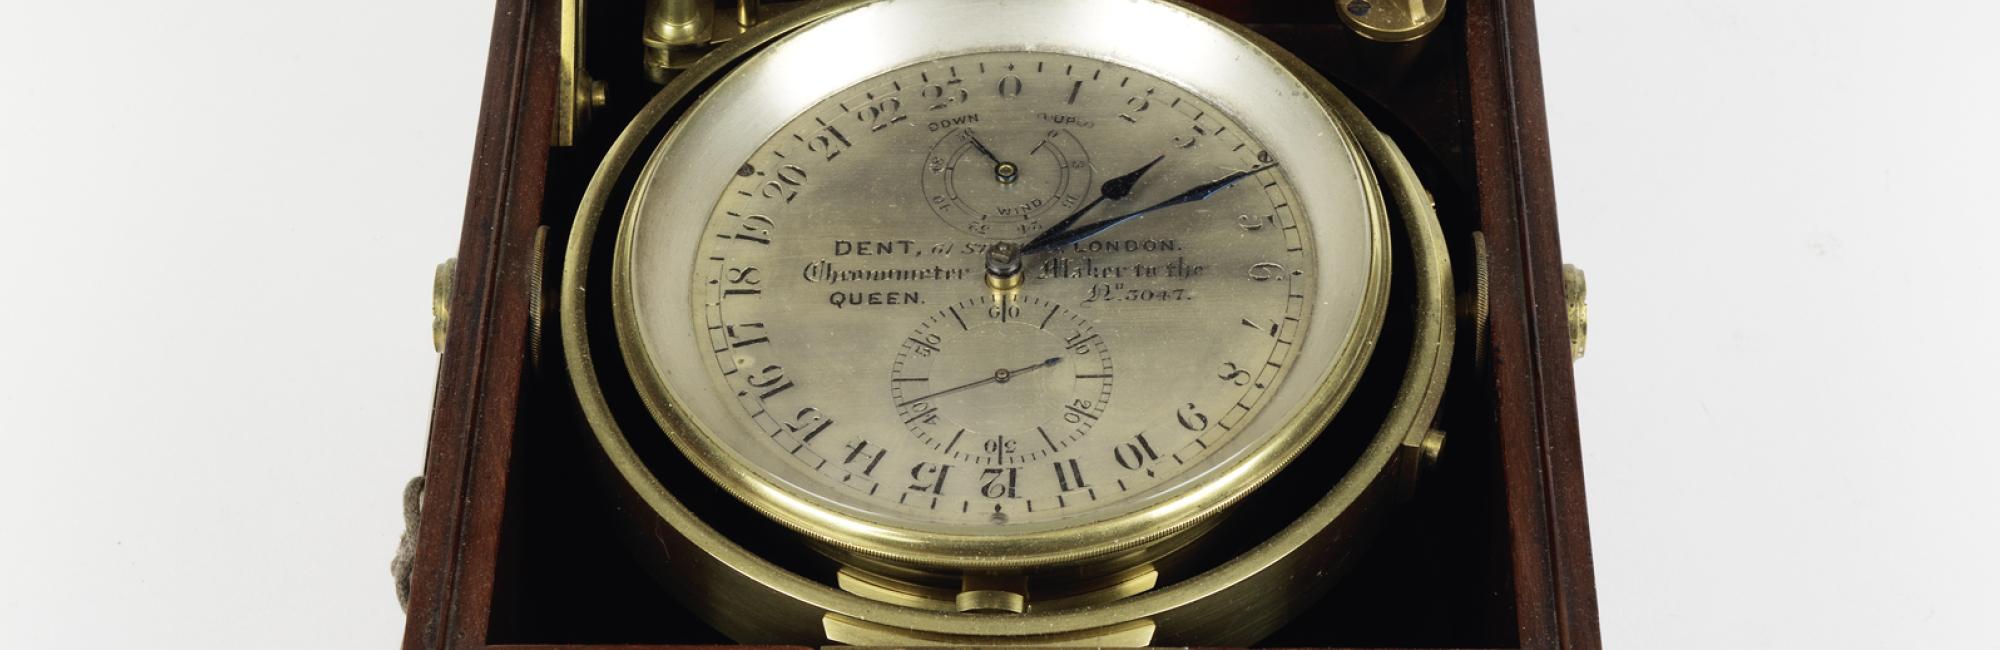 chronometer Dent 19de eeuw